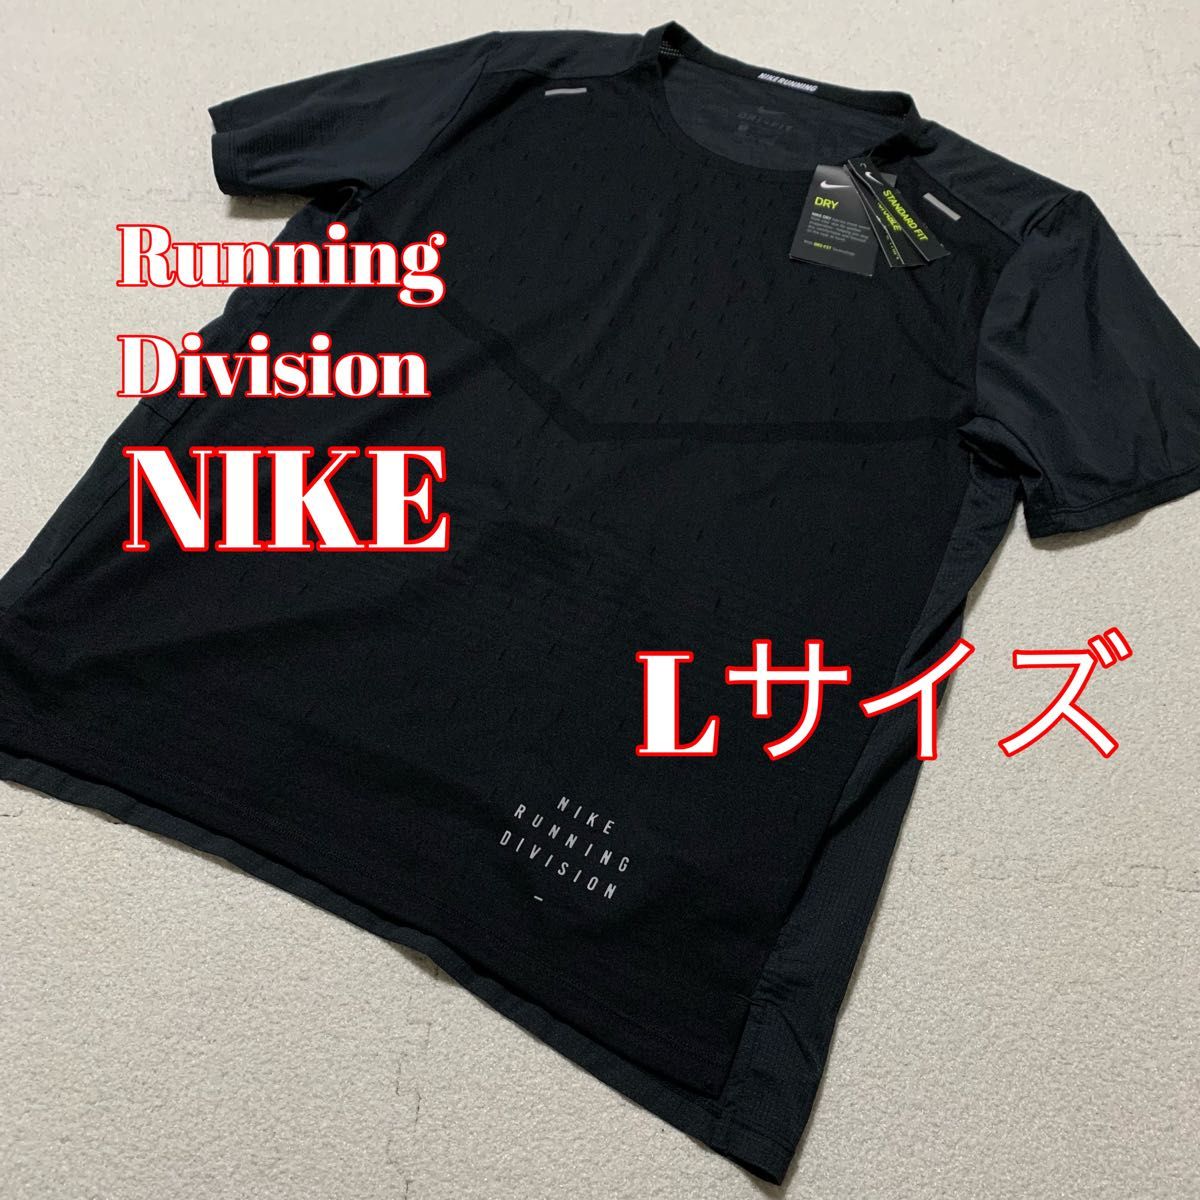 新品未使用 NIKE ナイキ ランニング ディビジョン running division Tシャツ Lサイズ